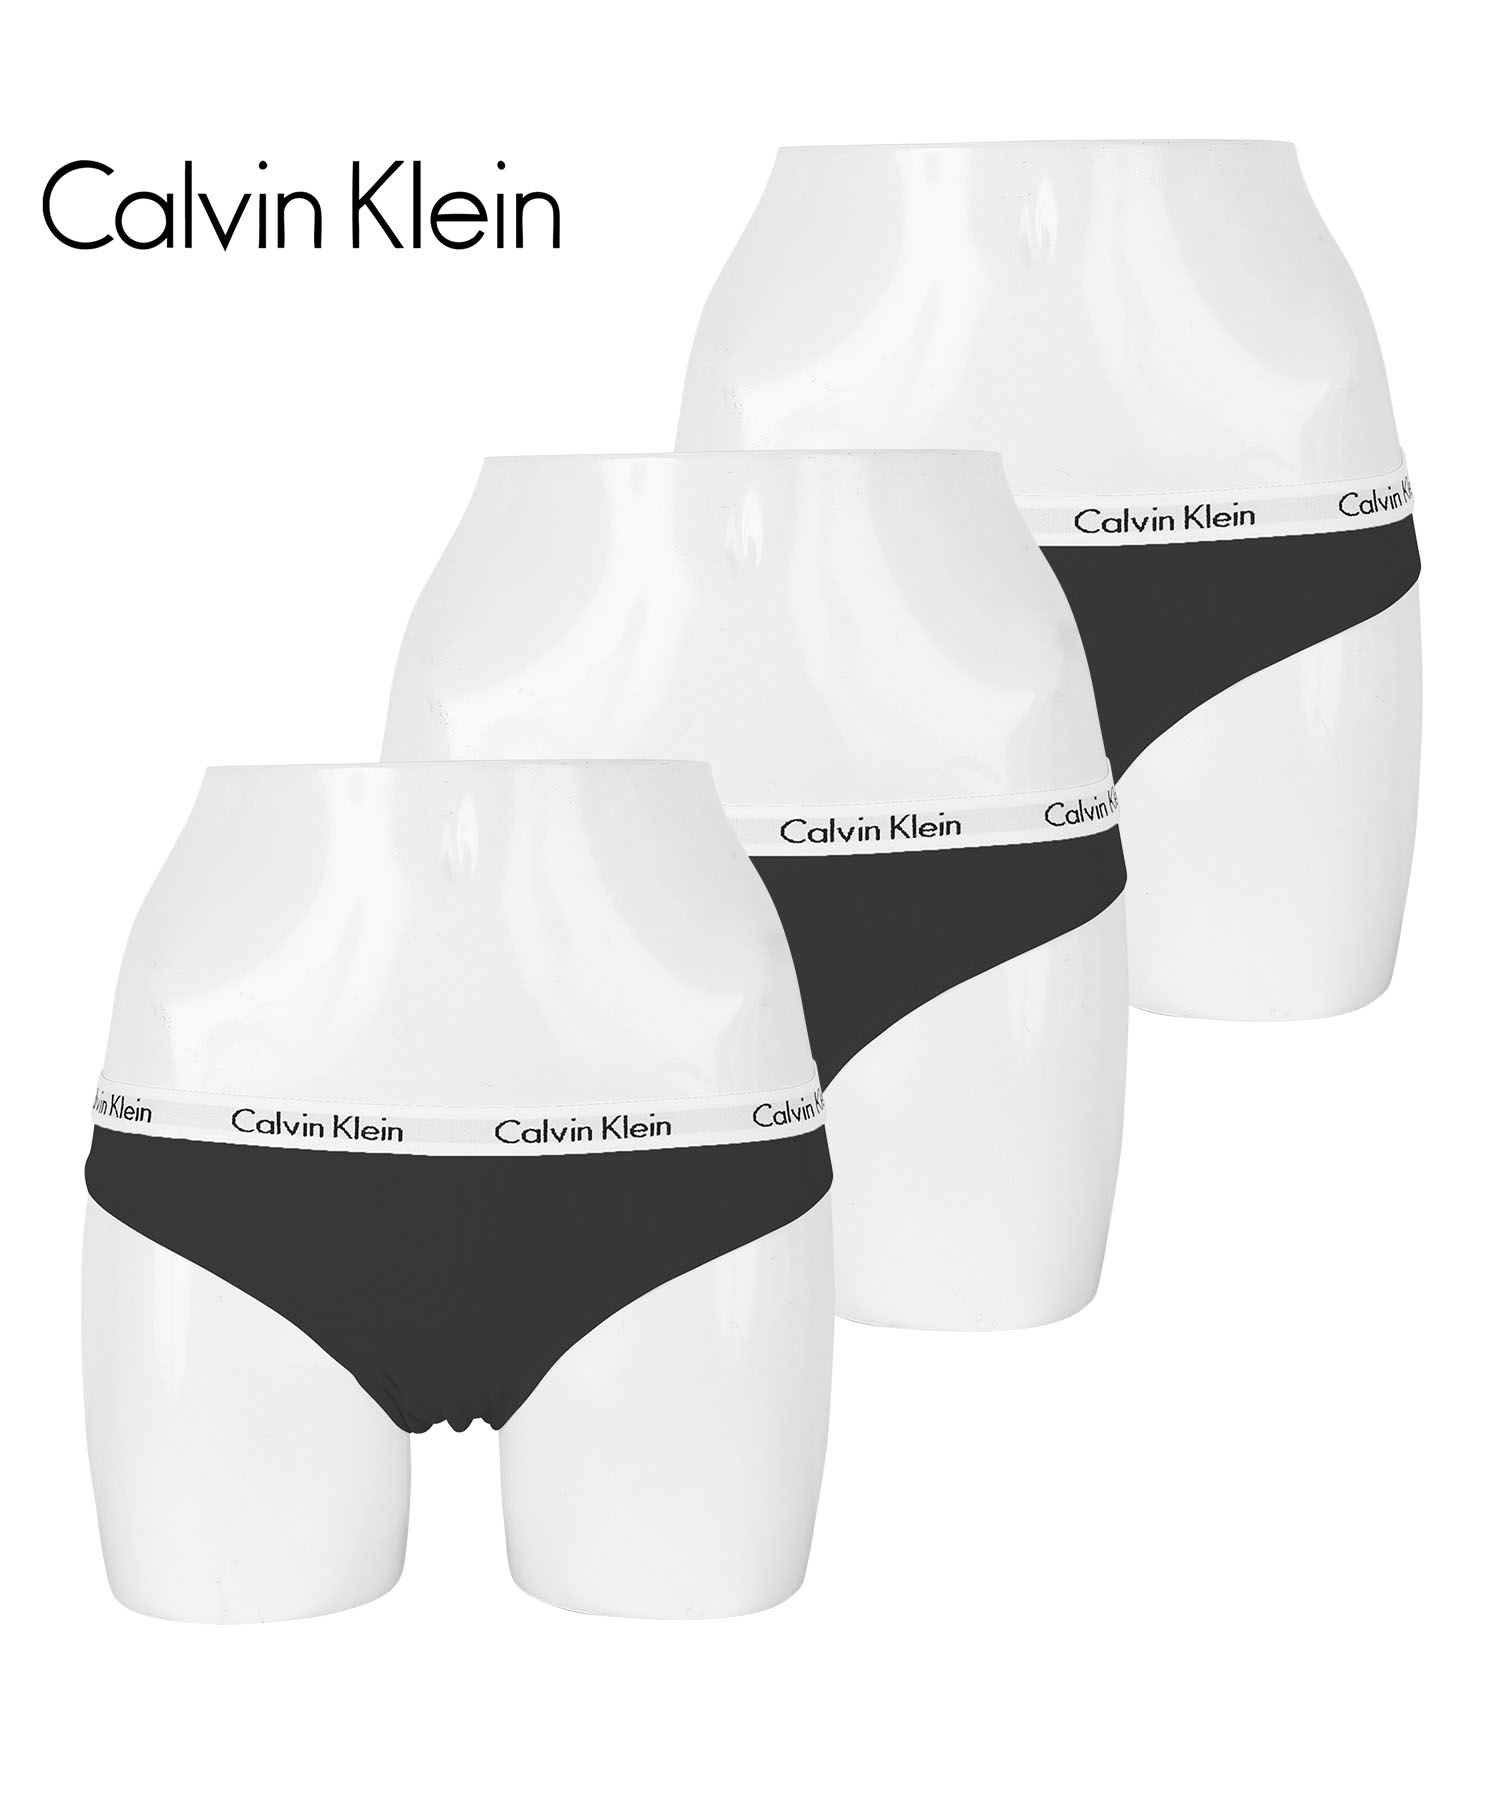 カルバンクライン Calvin Klein ショーツ 3枚セット レディース アンダーウェア 女性下着 綿混 コットン CK ロゴ 高級 ハイブランド